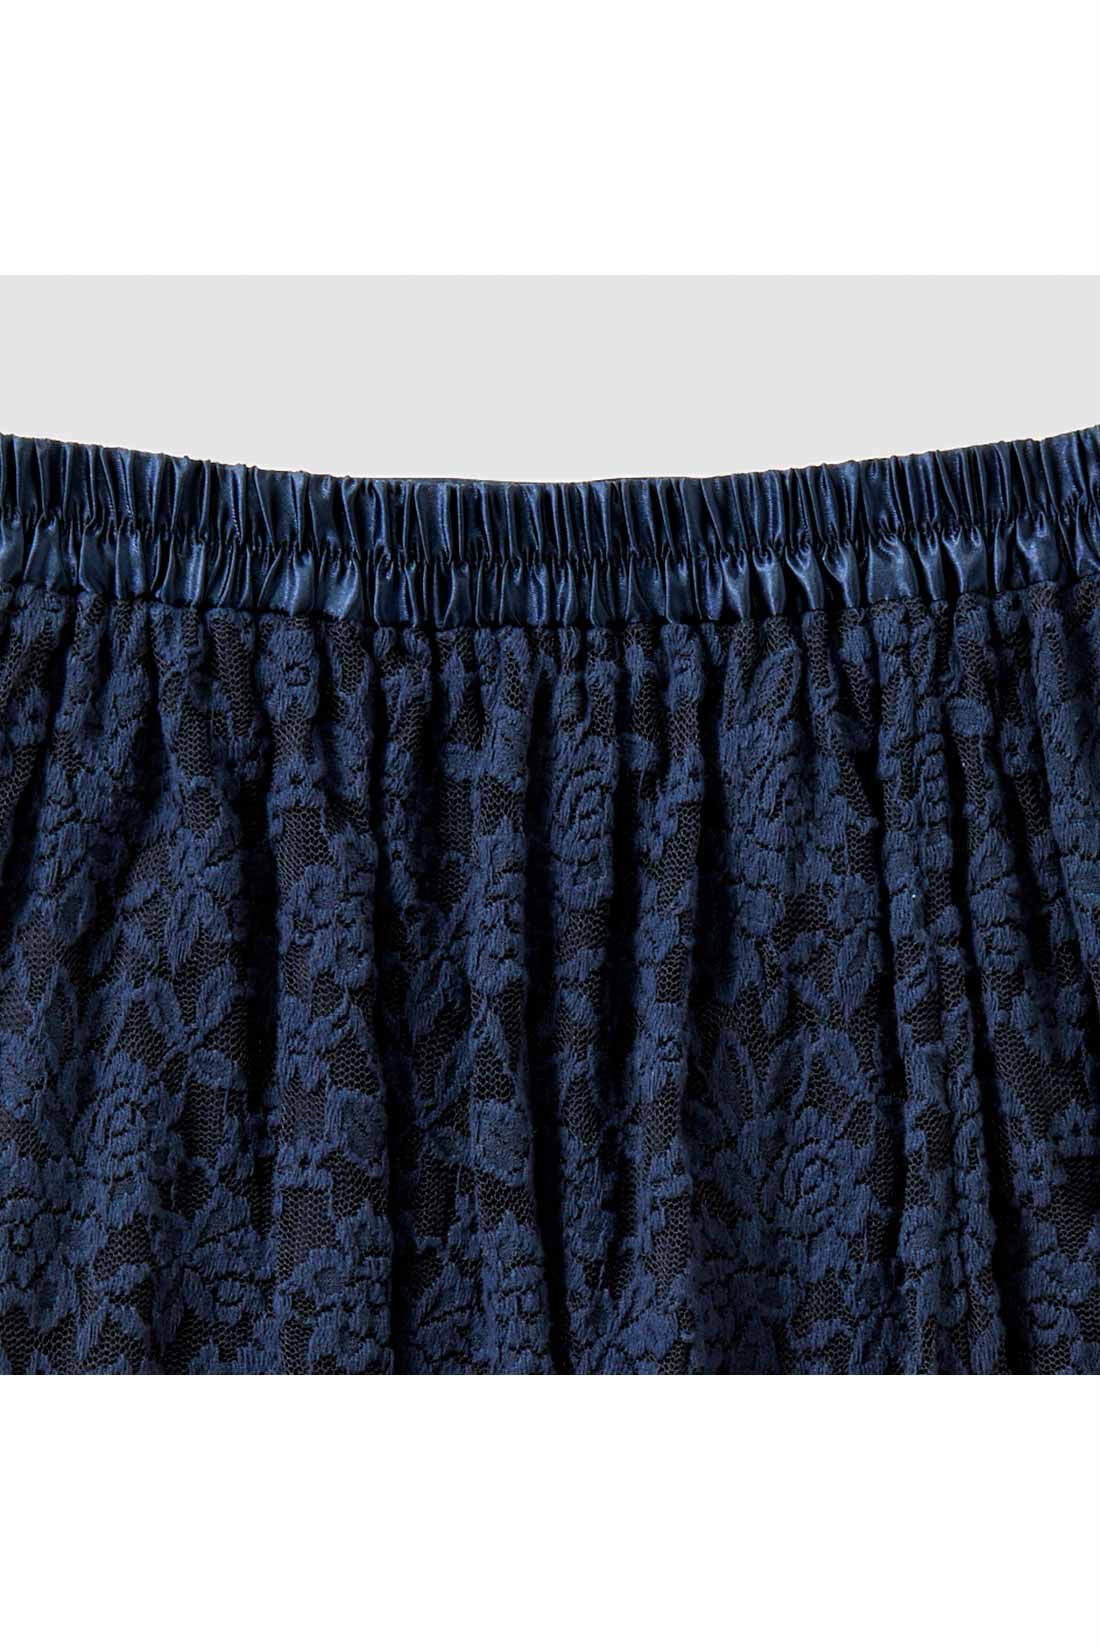 IEDIT[イディット]　帯電防止インナーがうれしい 起毛レーススカート〈ブラック〉|ウエストわきから後ろゴム仕様でらくちん。 ※お届けするカラーとは異なります。